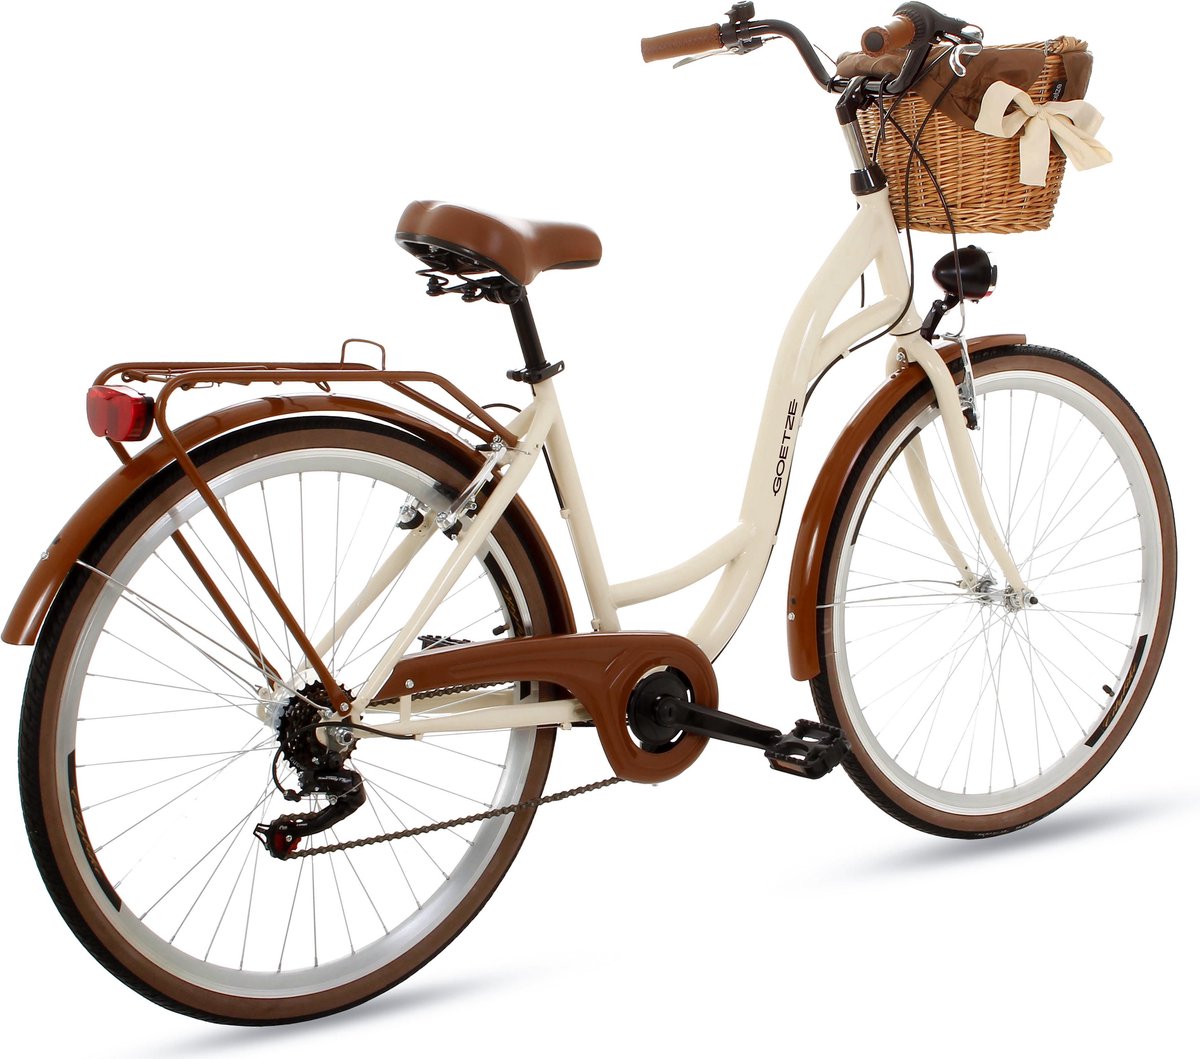 Goetze Mood Damesfiets Retro Vintage Holland Citybike, 28 inch aluminium wielen, 7 versnellingen Shimano schakelwerk, diepe instap, mand met bekleding